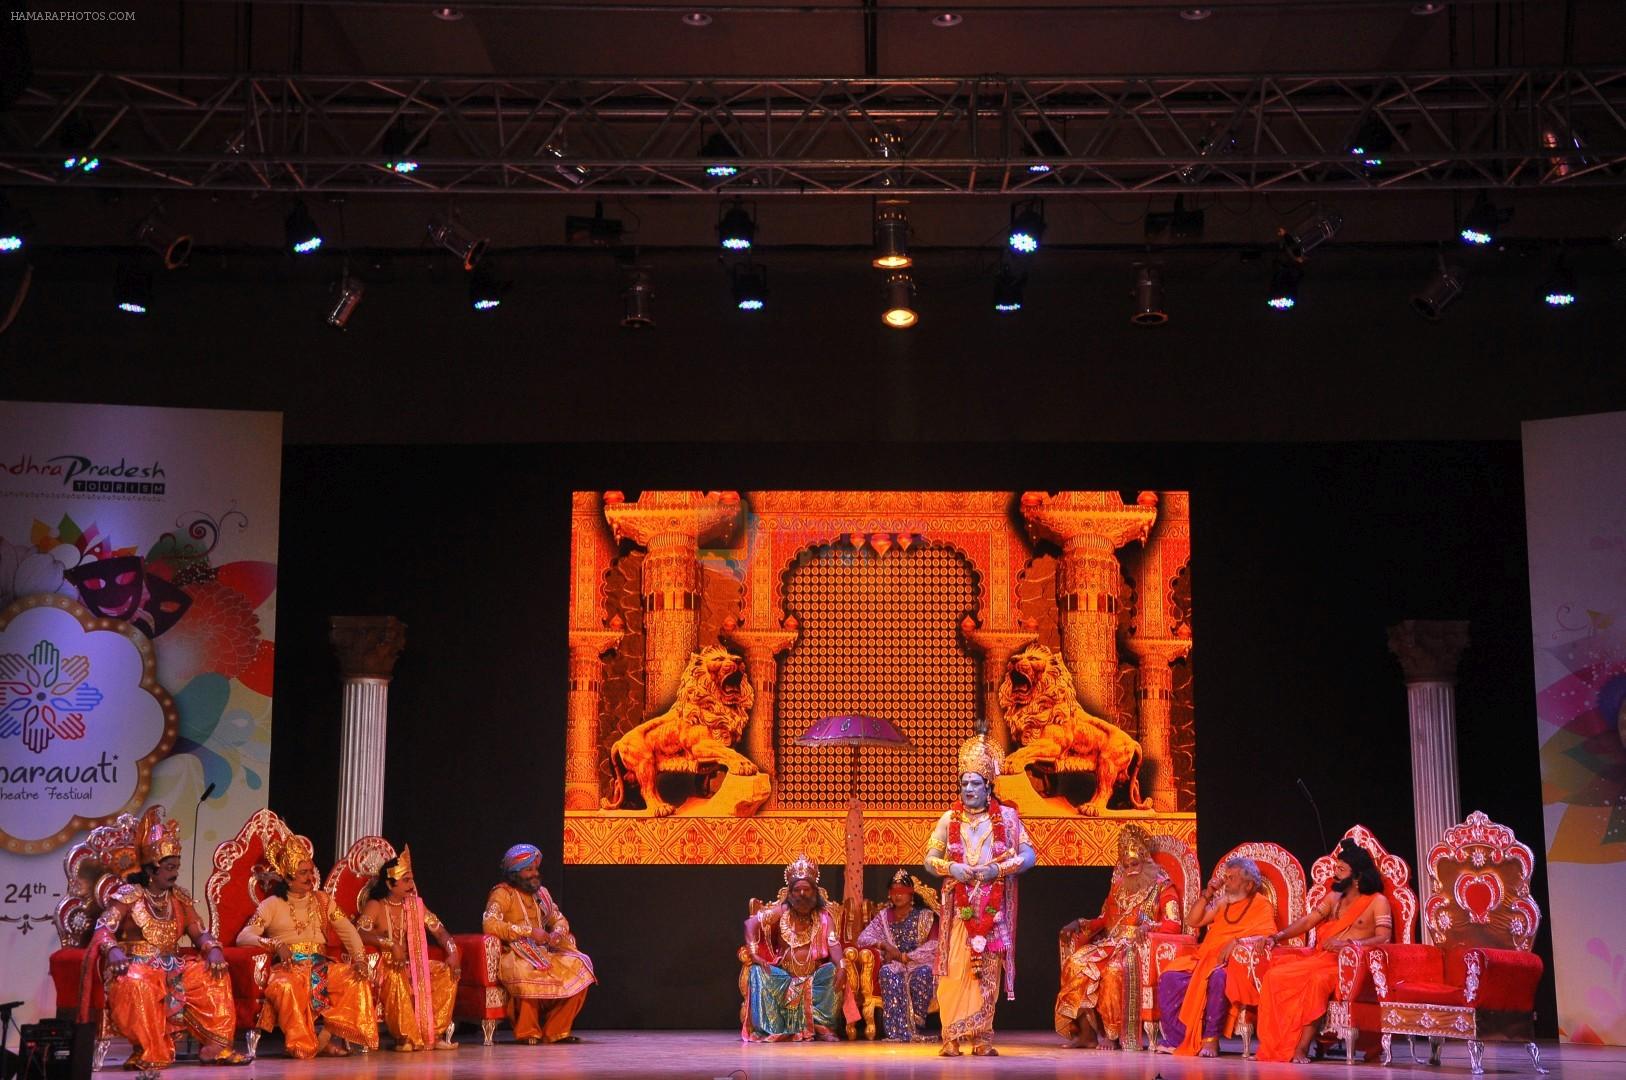 At The Inauguration Of Amaravati Theatre Festival on 24th Nov 2017